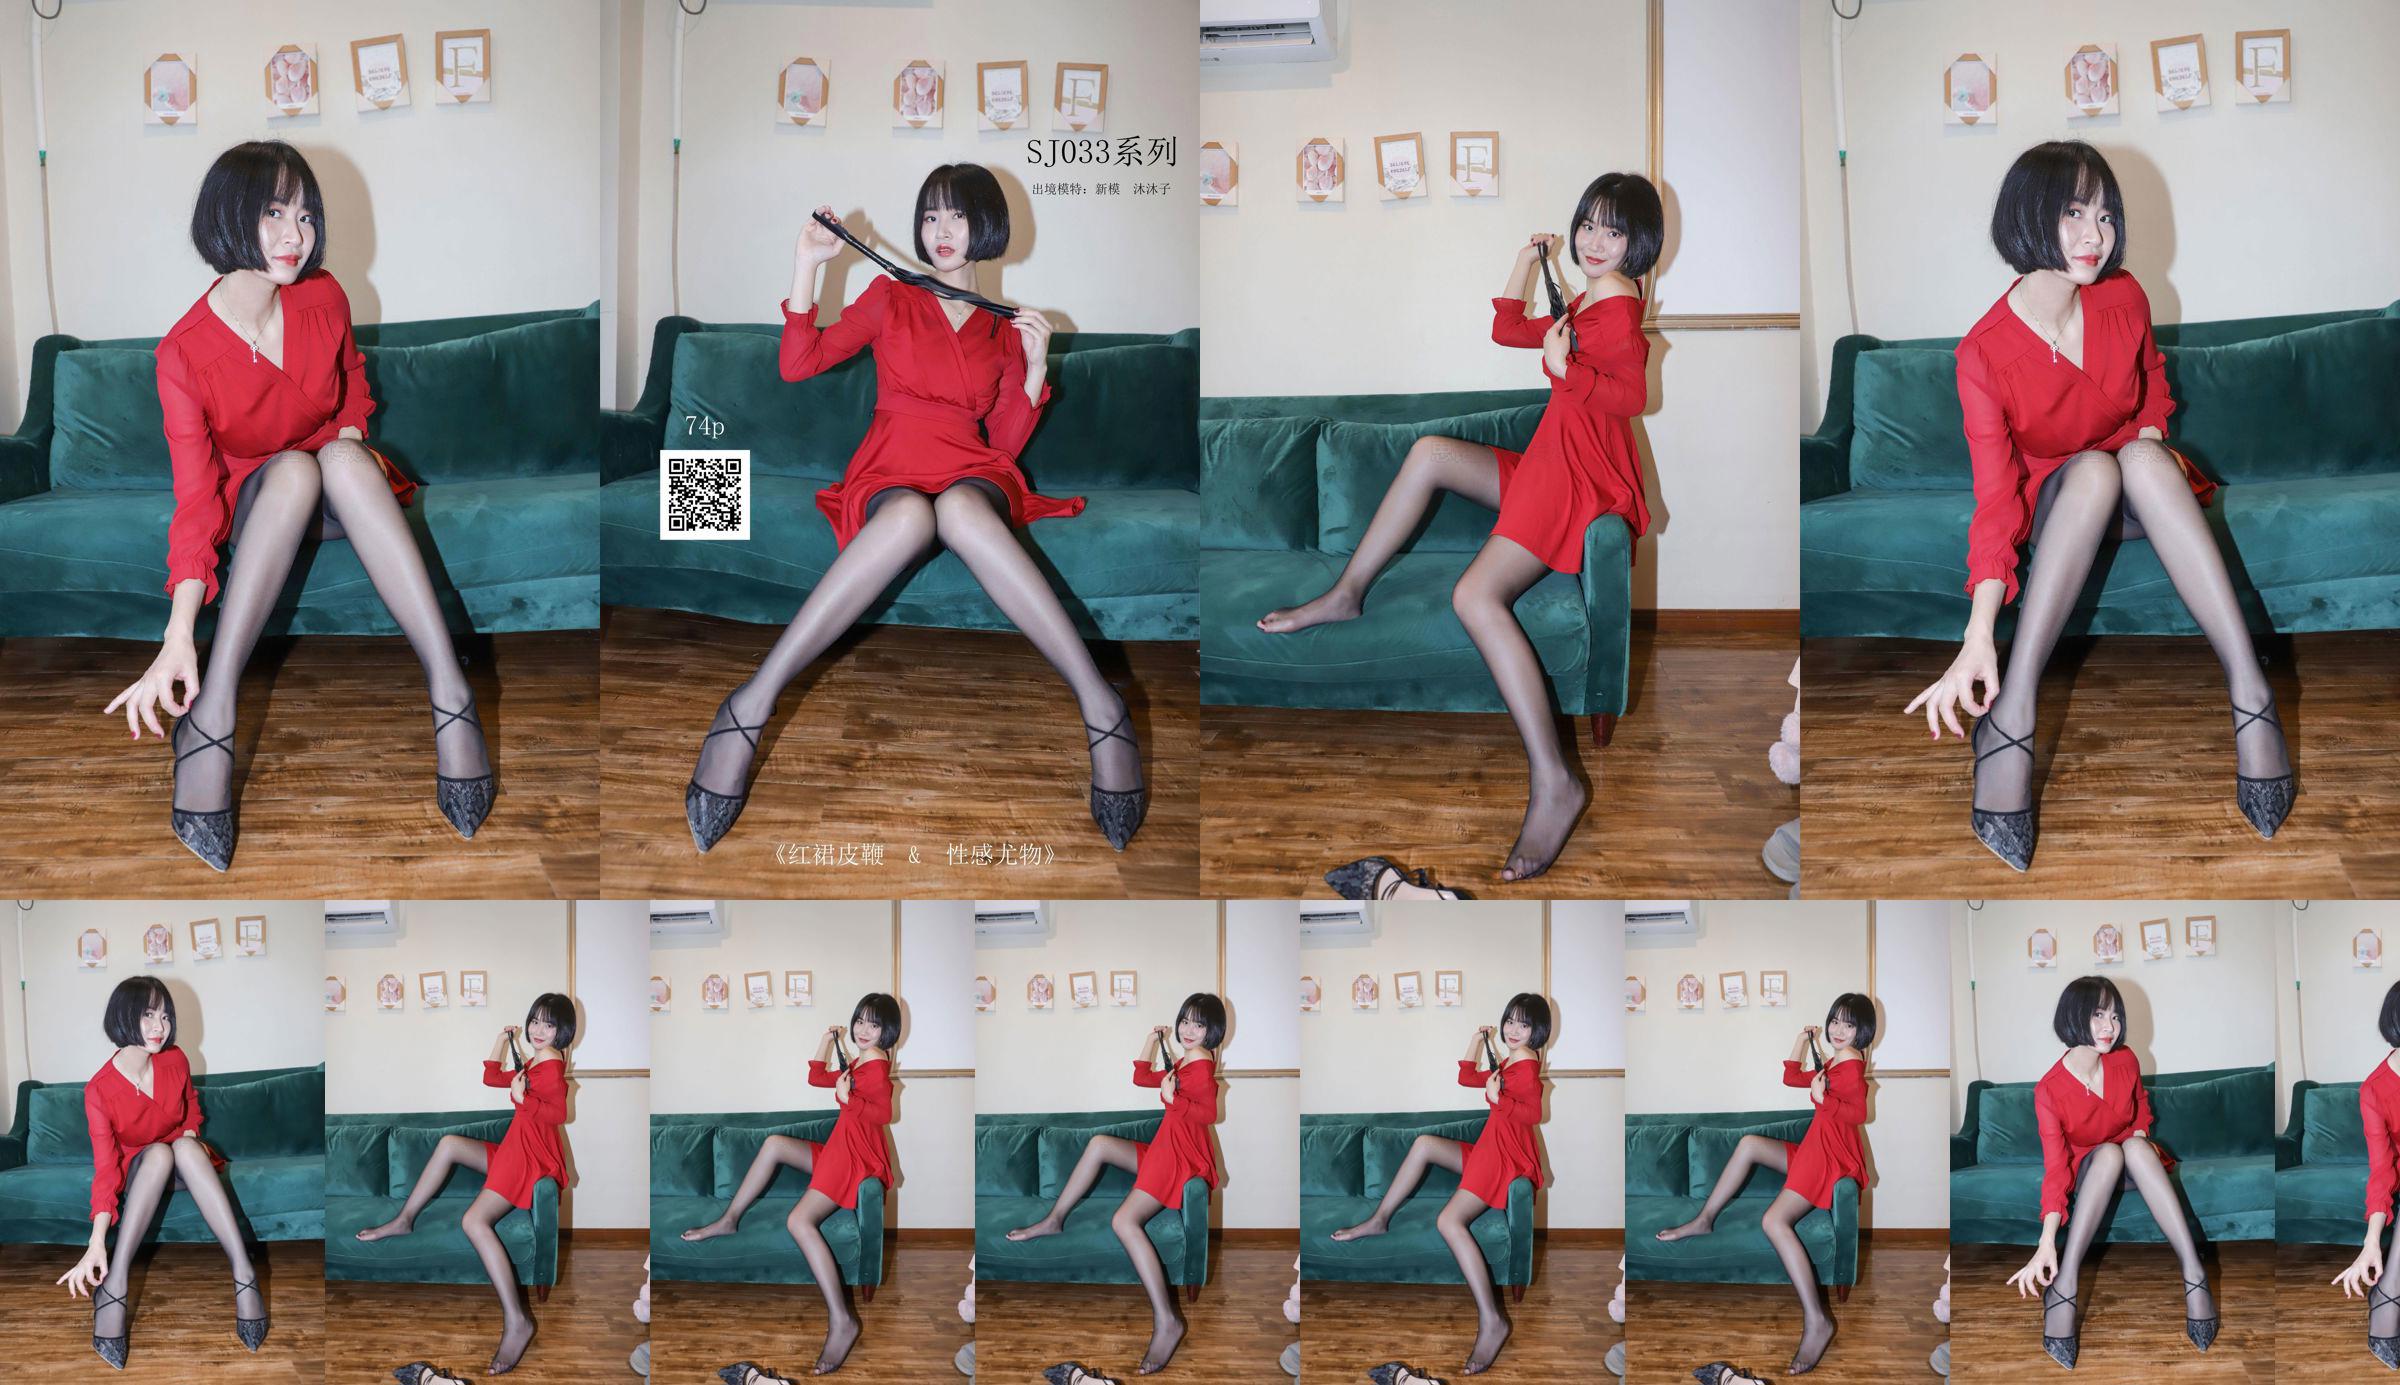 [Suy nghĩ từ SiHua] SJ033 mẫu mới Muzi váy đỏ roi da の sexy choáng No.81569f Trang 6